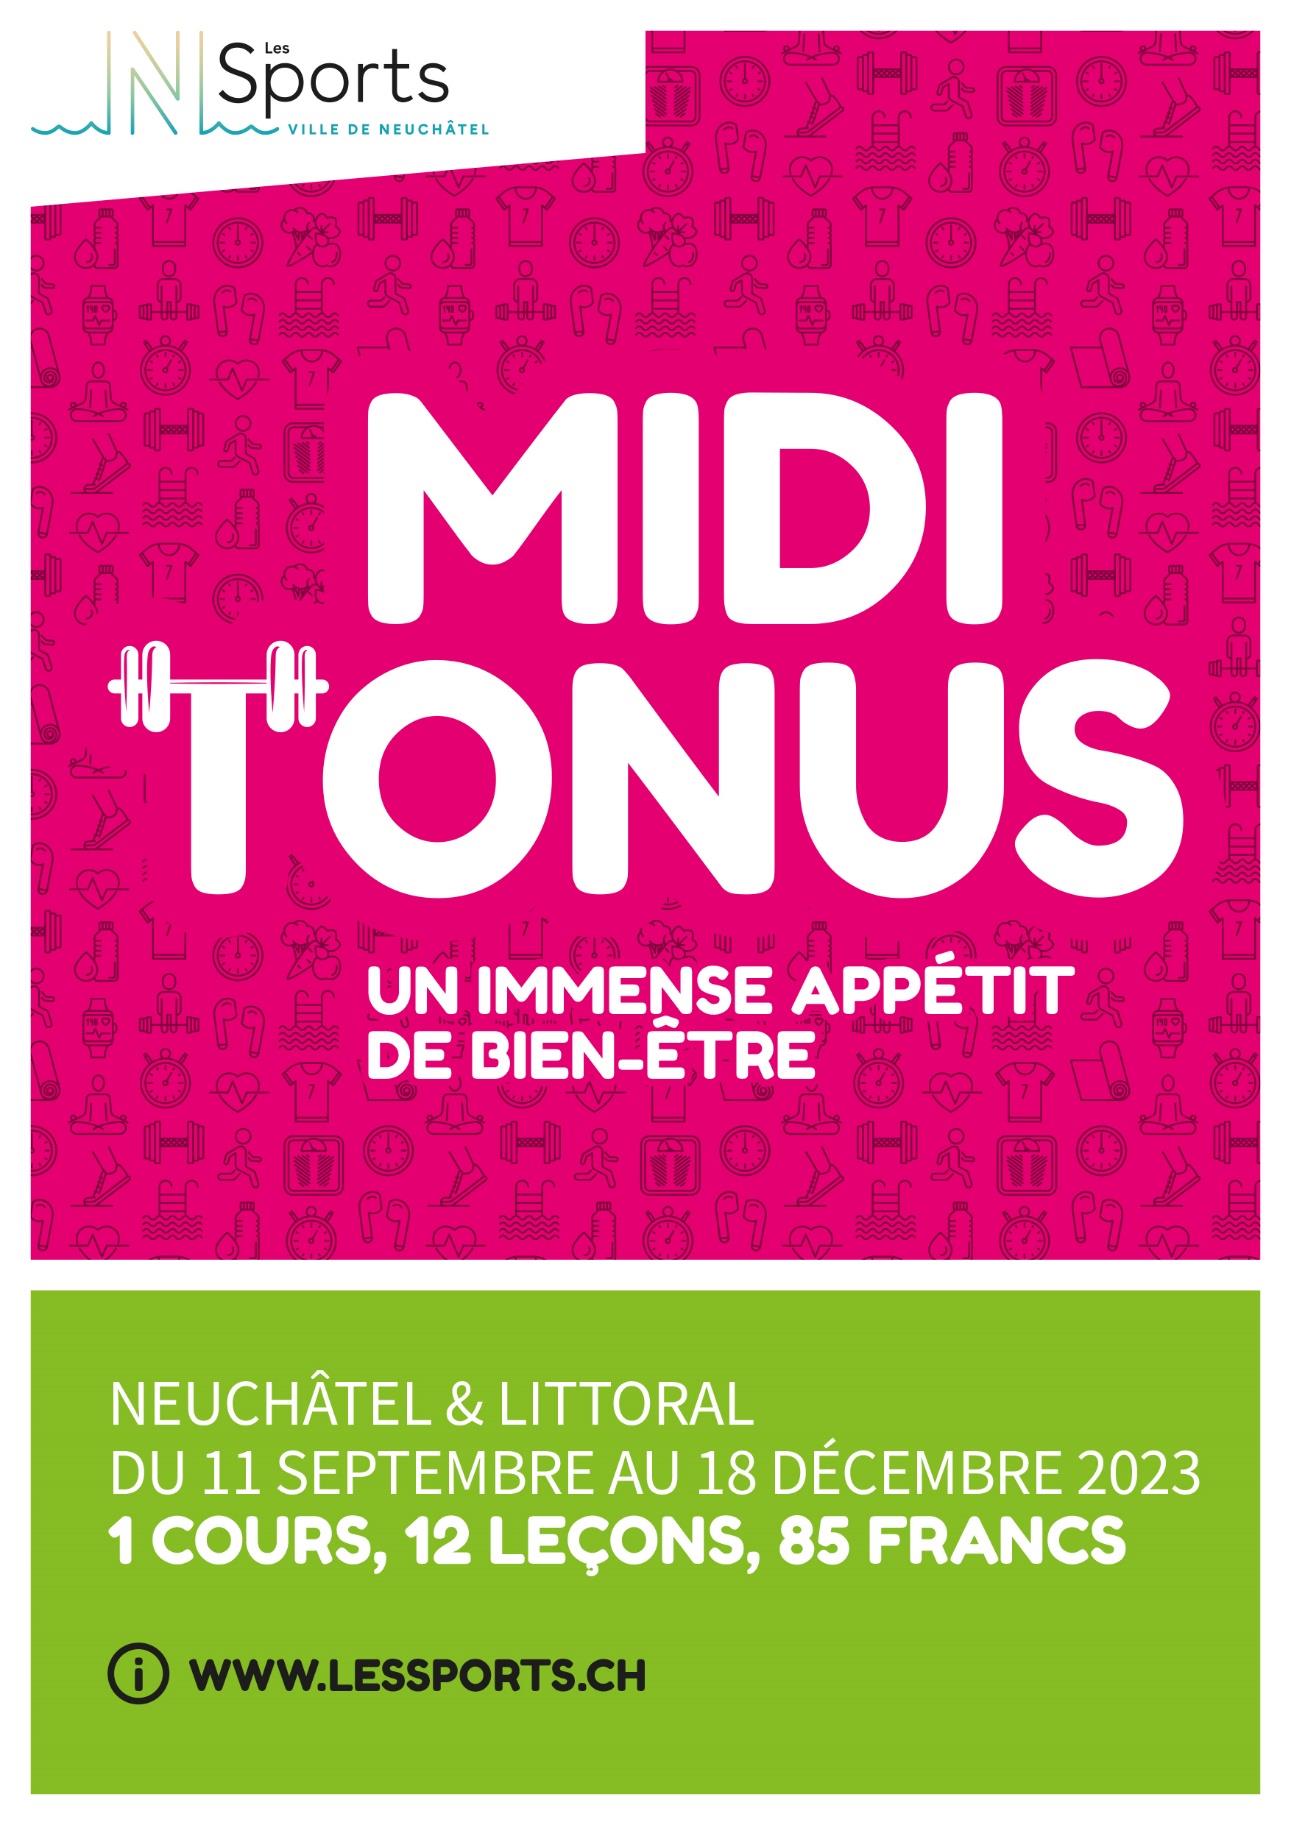 Midi_tonus_NE_automne_2023.jpg